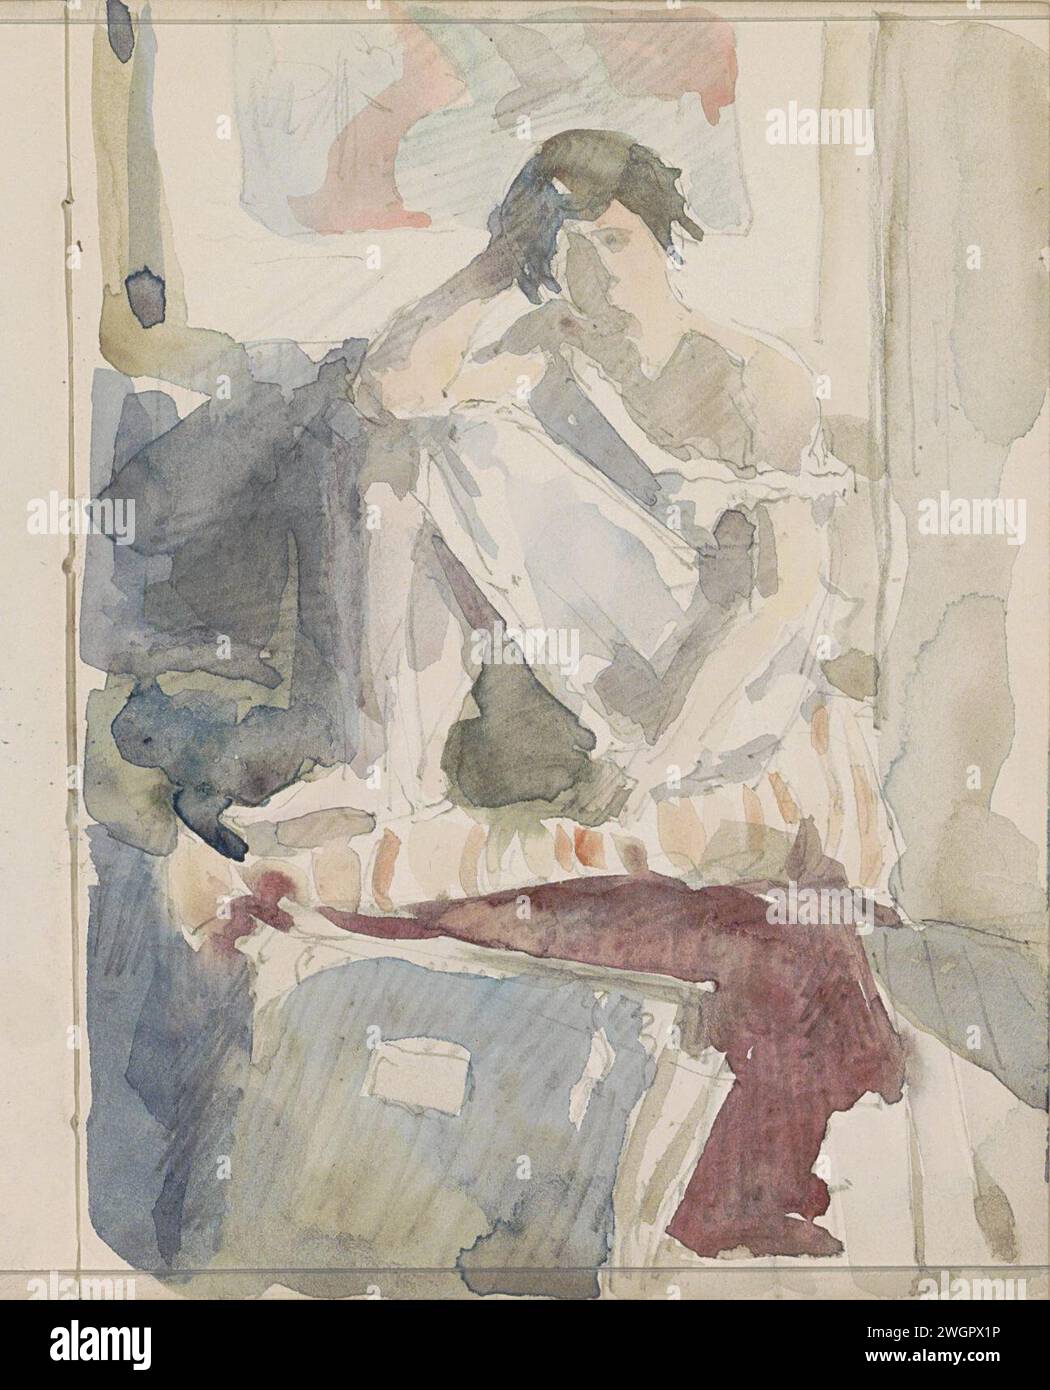 Sitzende Frau in einem Innenraum, ca. 1916 die Frau trägt ein Nachthemd und wird mit einem Bein hochgezogen, wobei ihr Ellbogen auf dem Knie liegt. Im Vordergrund befindet sich ein Ordner, möglicherweise ein Zeichnungsordner. Seite 63 Recto aus einem Skizzenbuch mit 72 Blättern. Papier. Bleistift. Aquarell (Farbe) Pinsel innen des Hauses. Sitzende Figur - AA - weibliche menschliche Figur Stockfoto